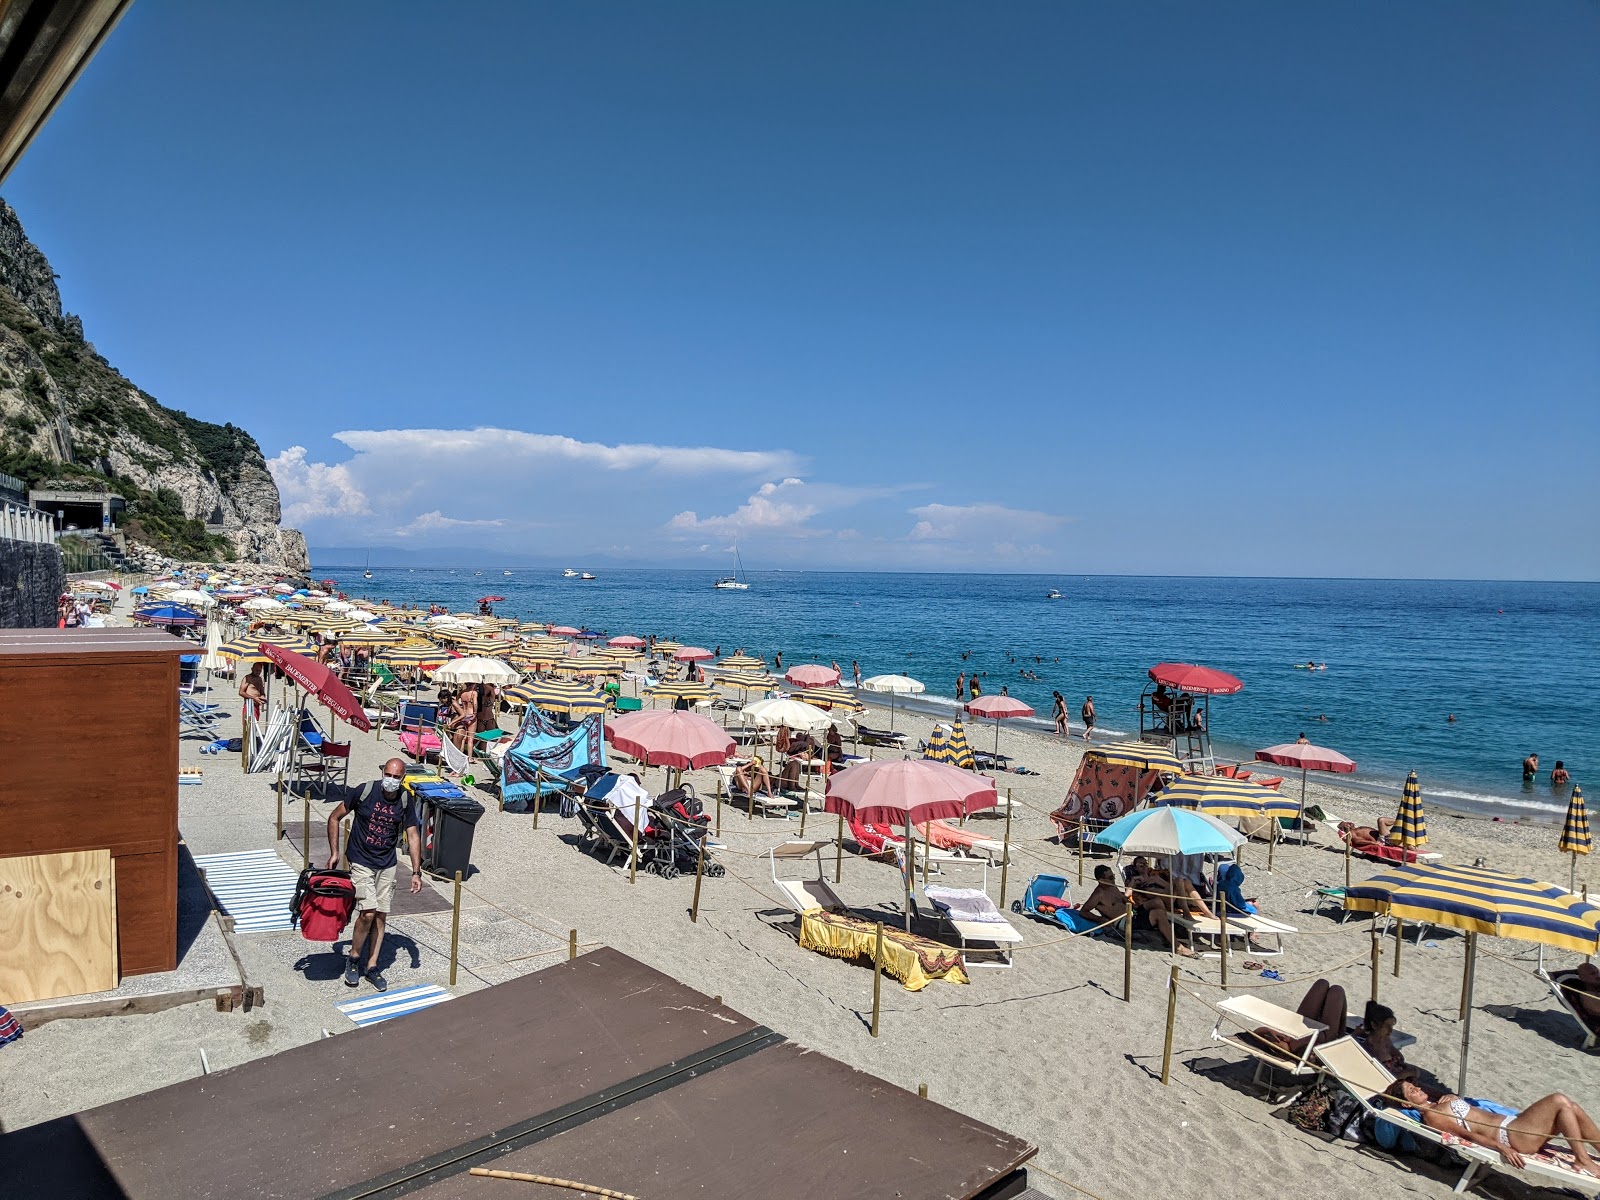 Photo of Spiaggia del Malpasso located in natural area